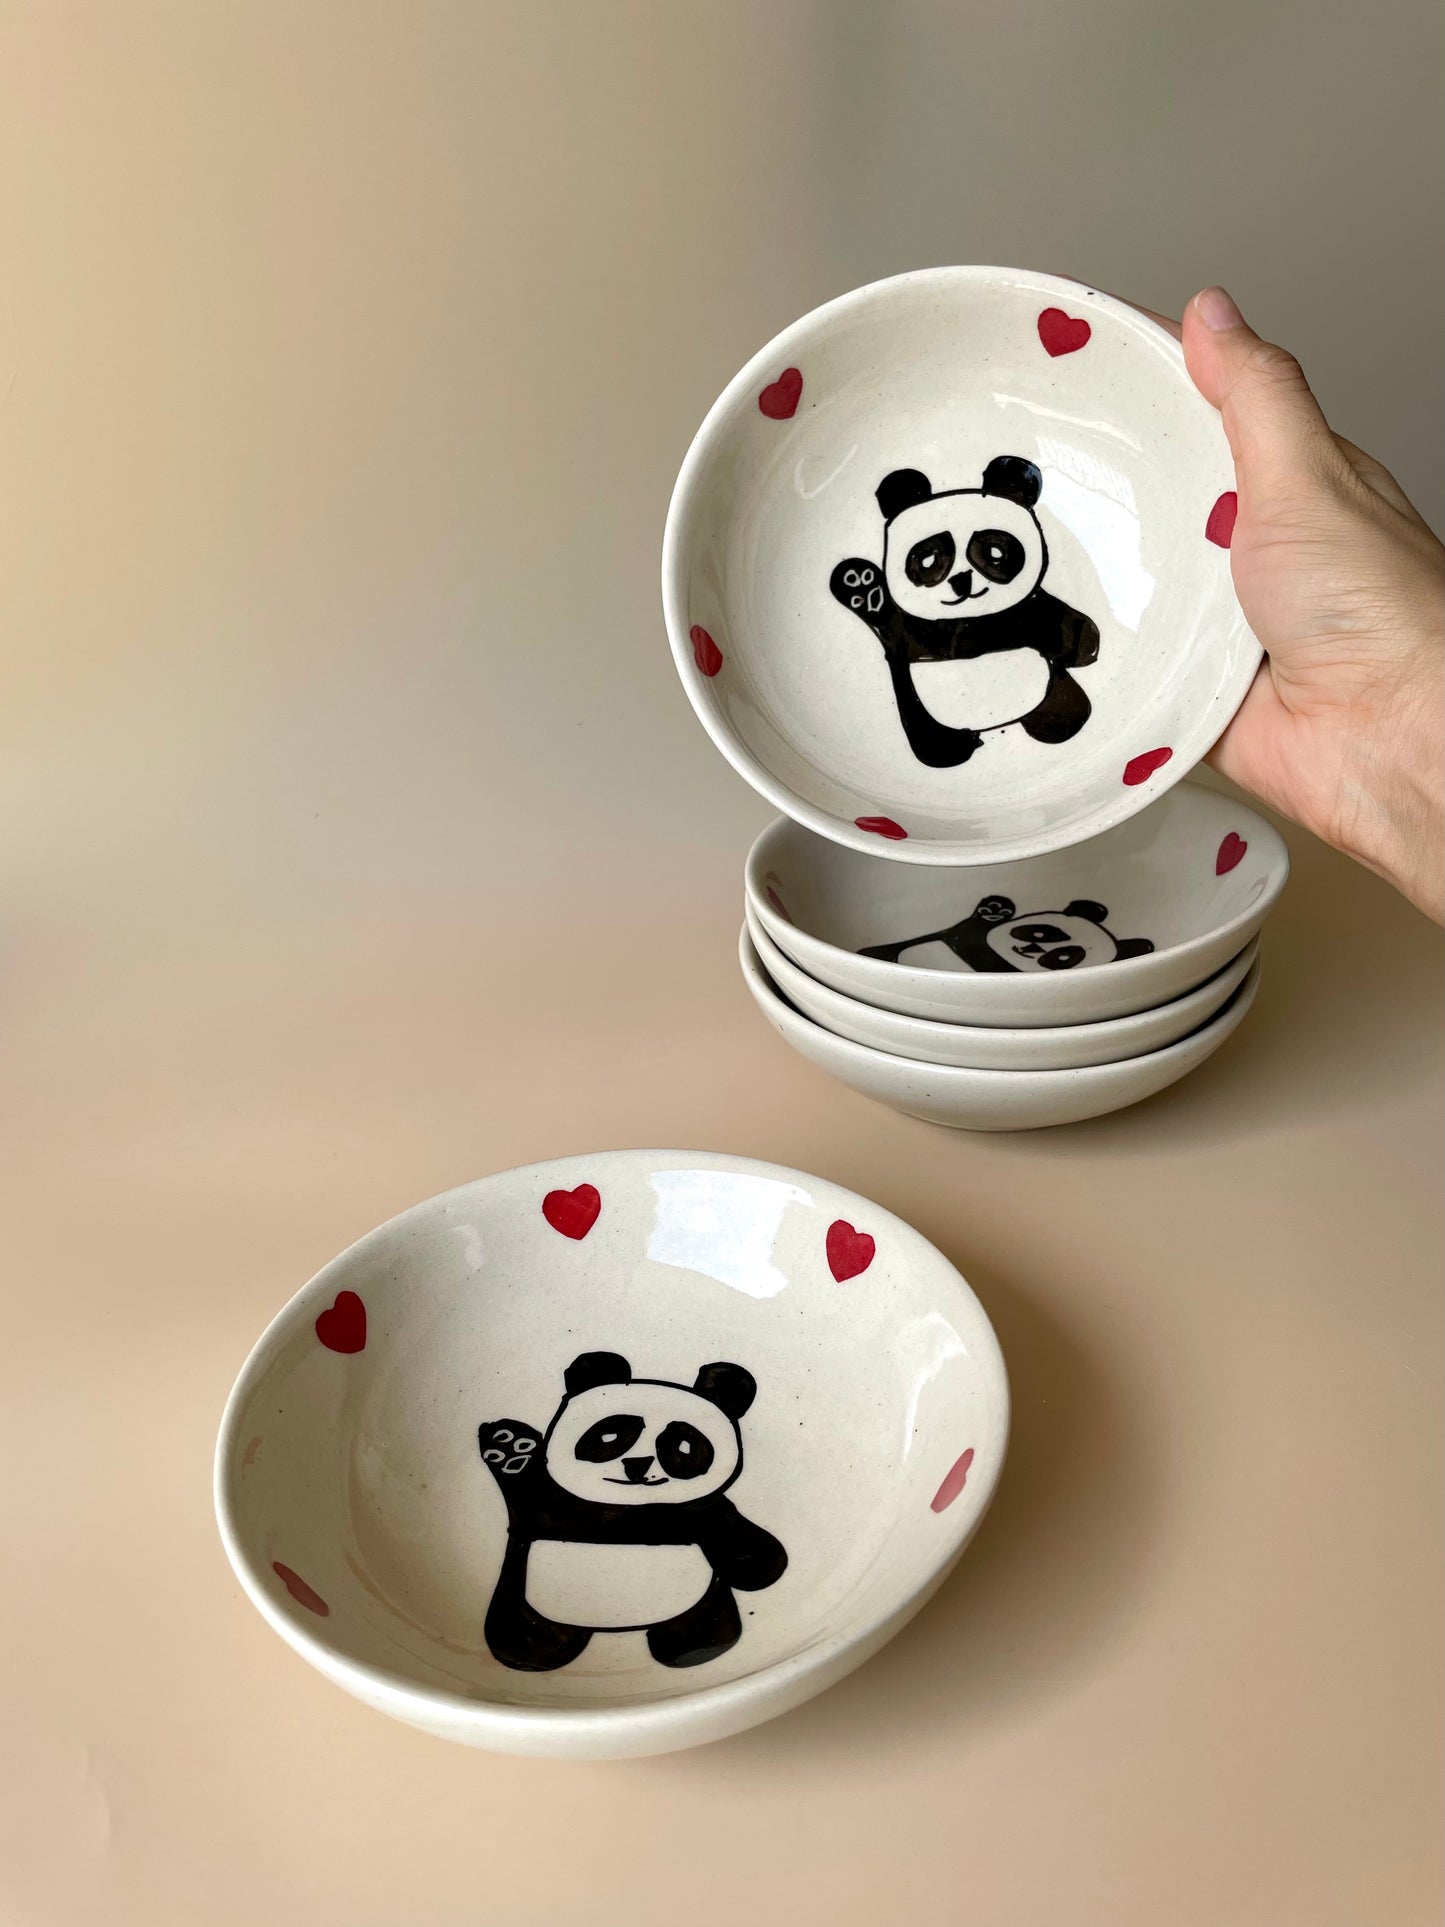 Lazy panda bowl